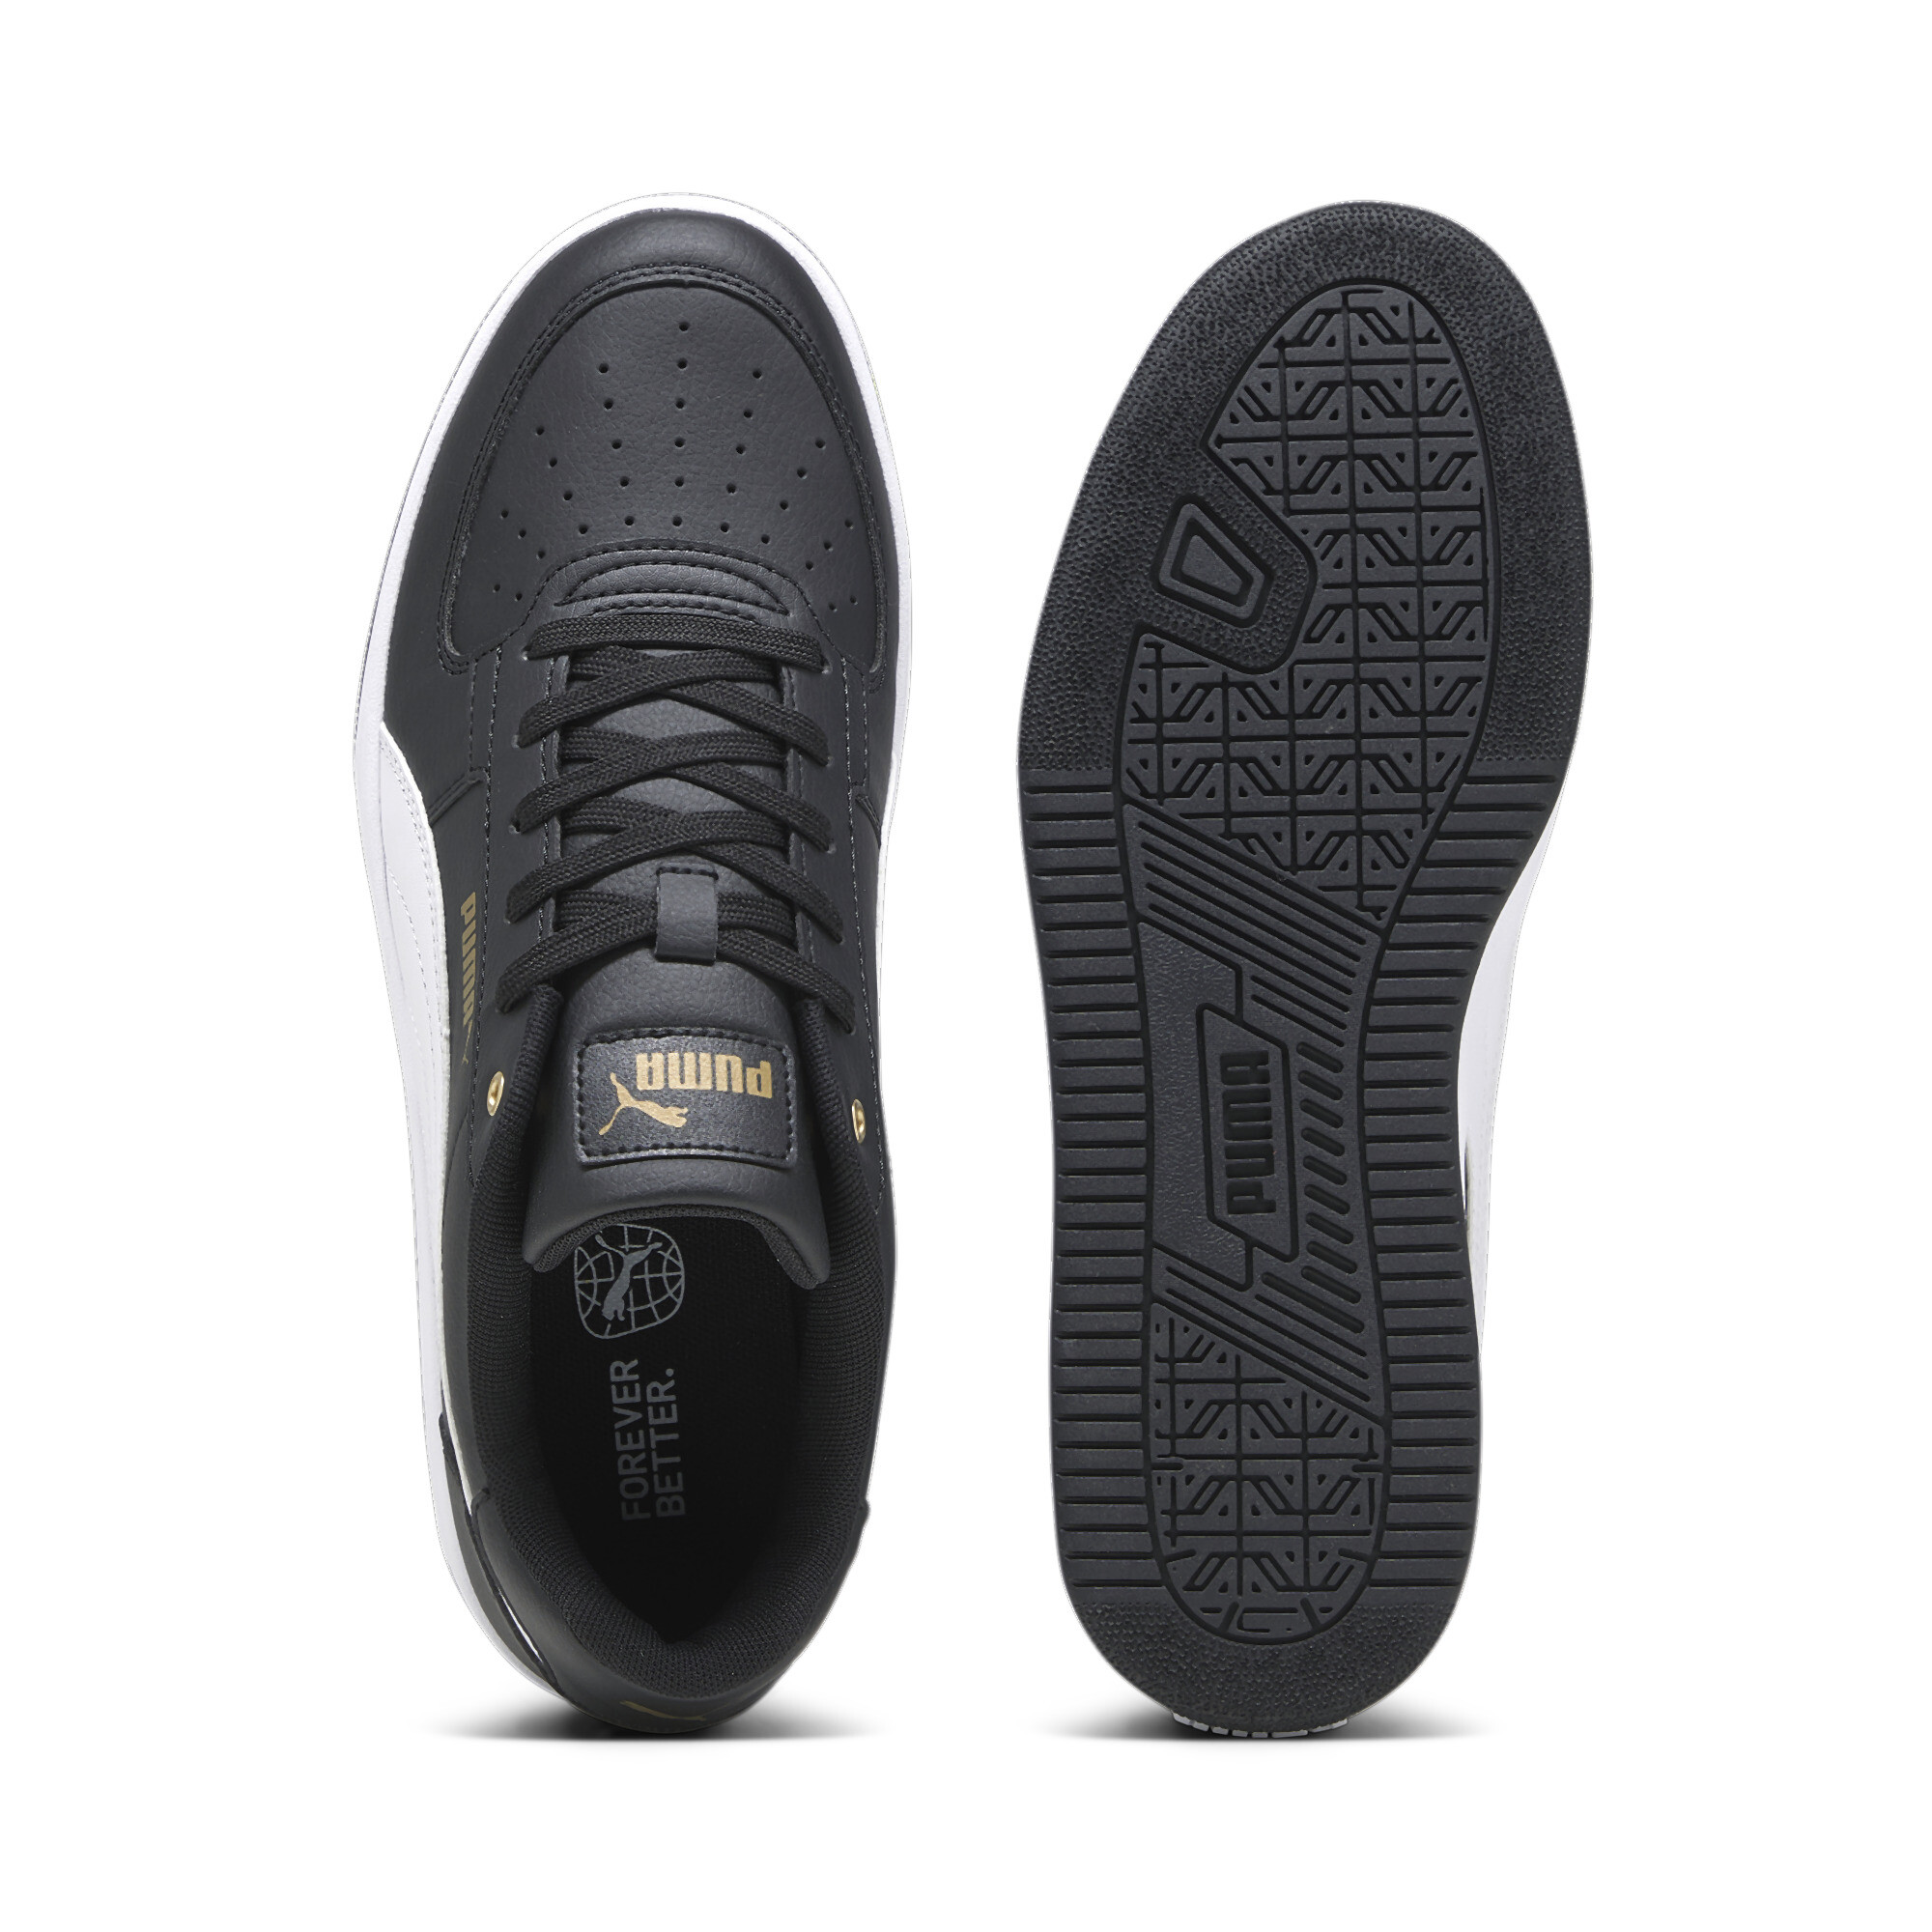 Men's PUMA Caven 2.0 Sneakers In Black/Gold, Size EU 38.5